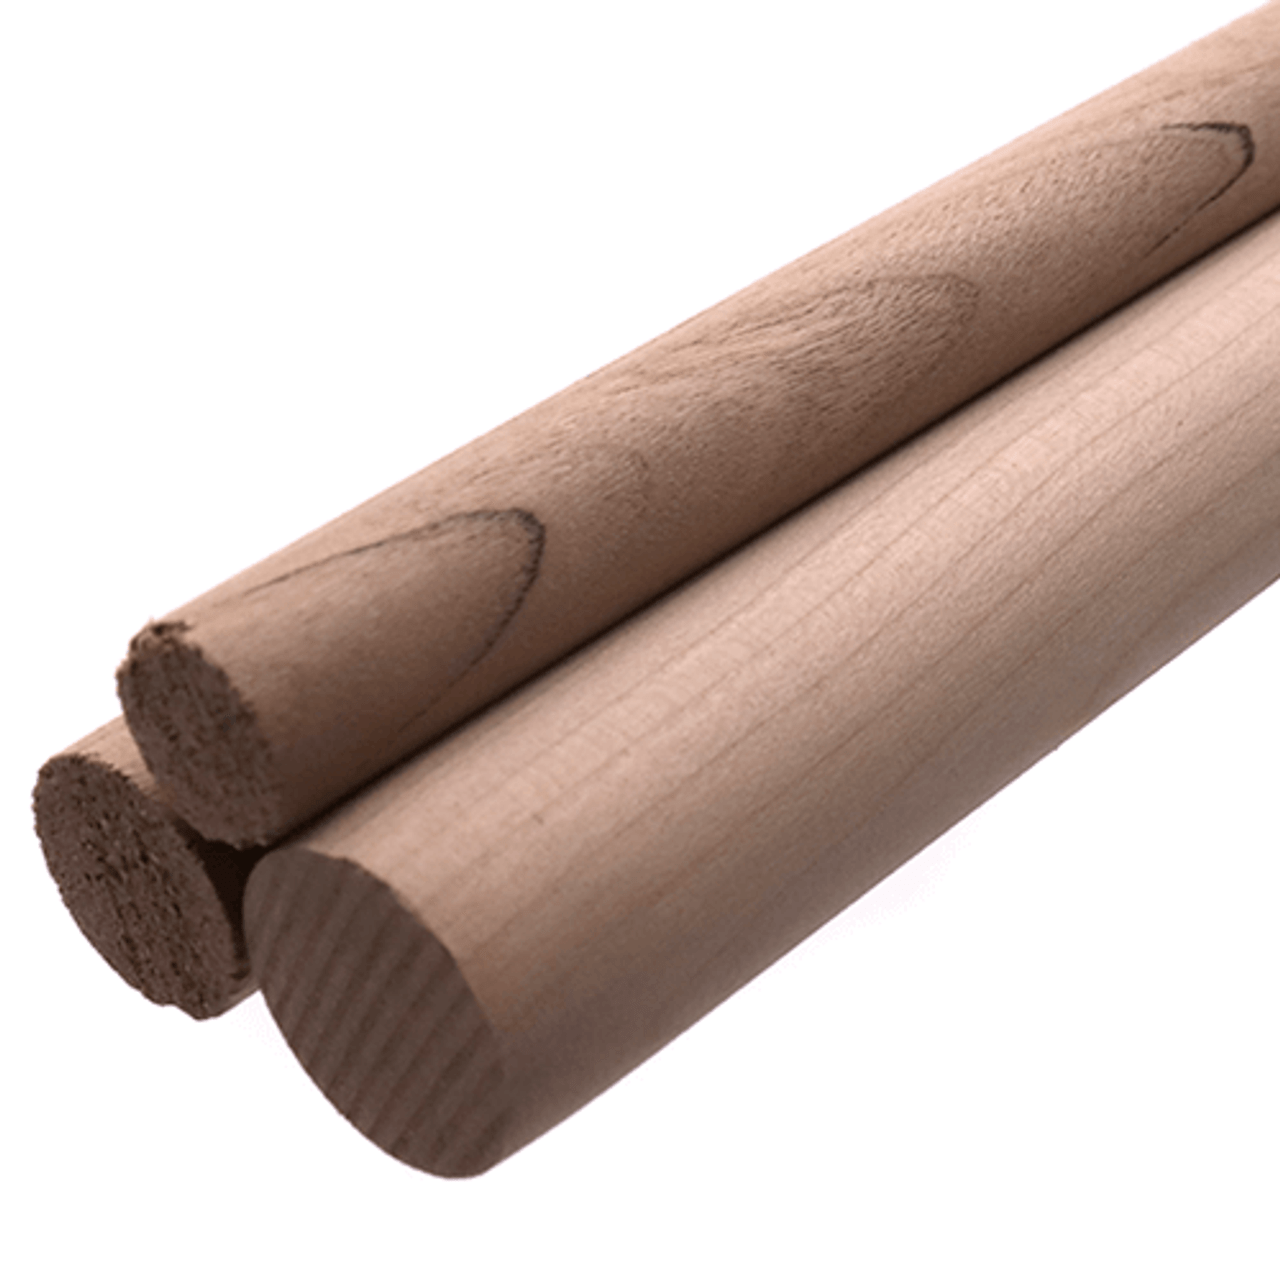 1/2 x 24 Wood Dowel Rods